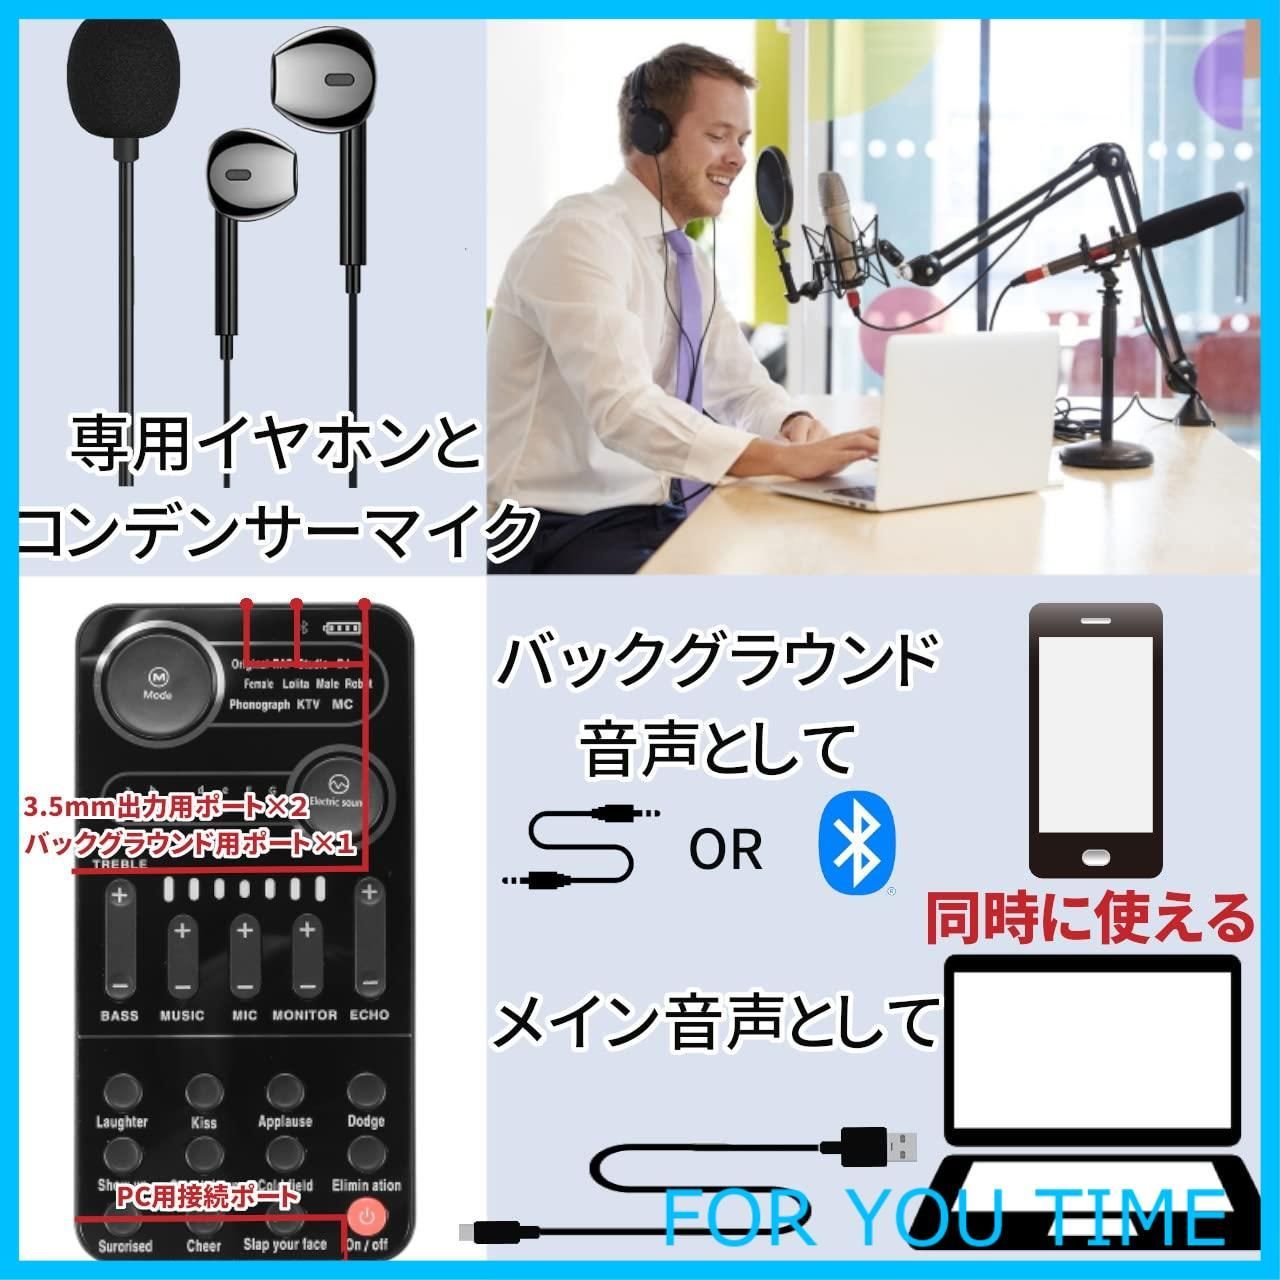 特価商品】ボイスチェンジャーK9 Sound card 日本語説明書付き 音声